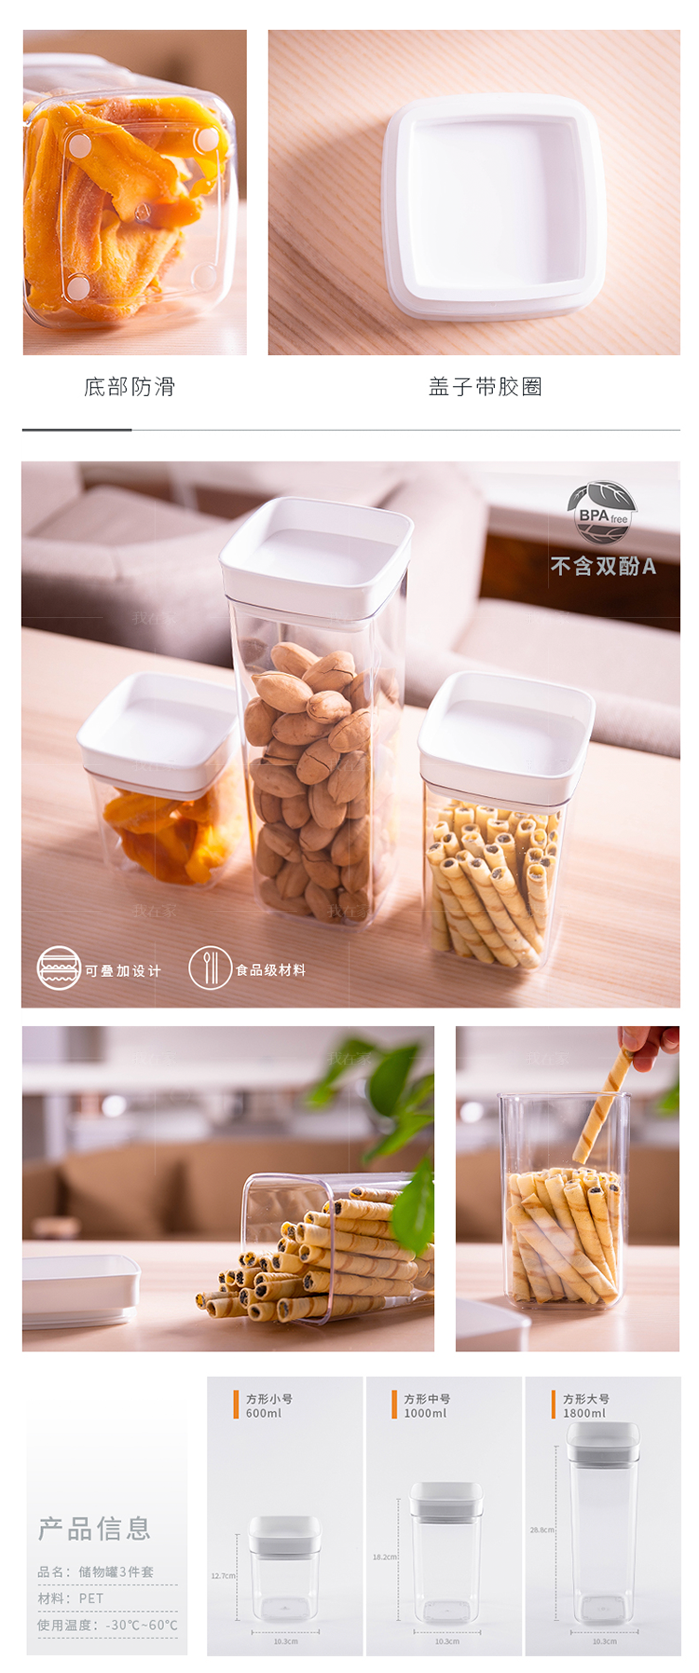 万佳宁系列厨房冰箱密封罐储物罐的详细介绍